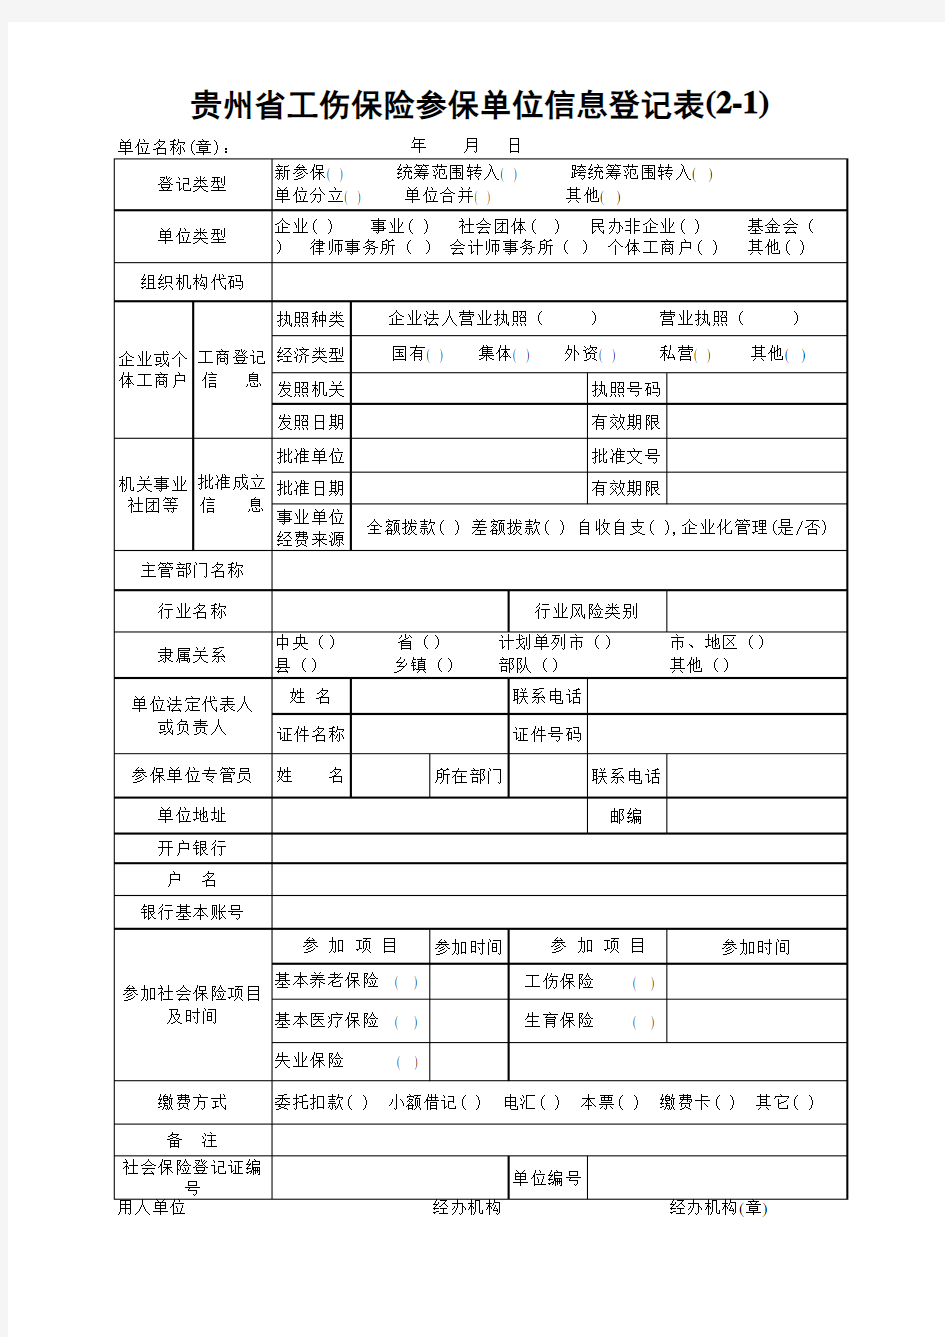 贵州省工伤保险参保单位信息登记表